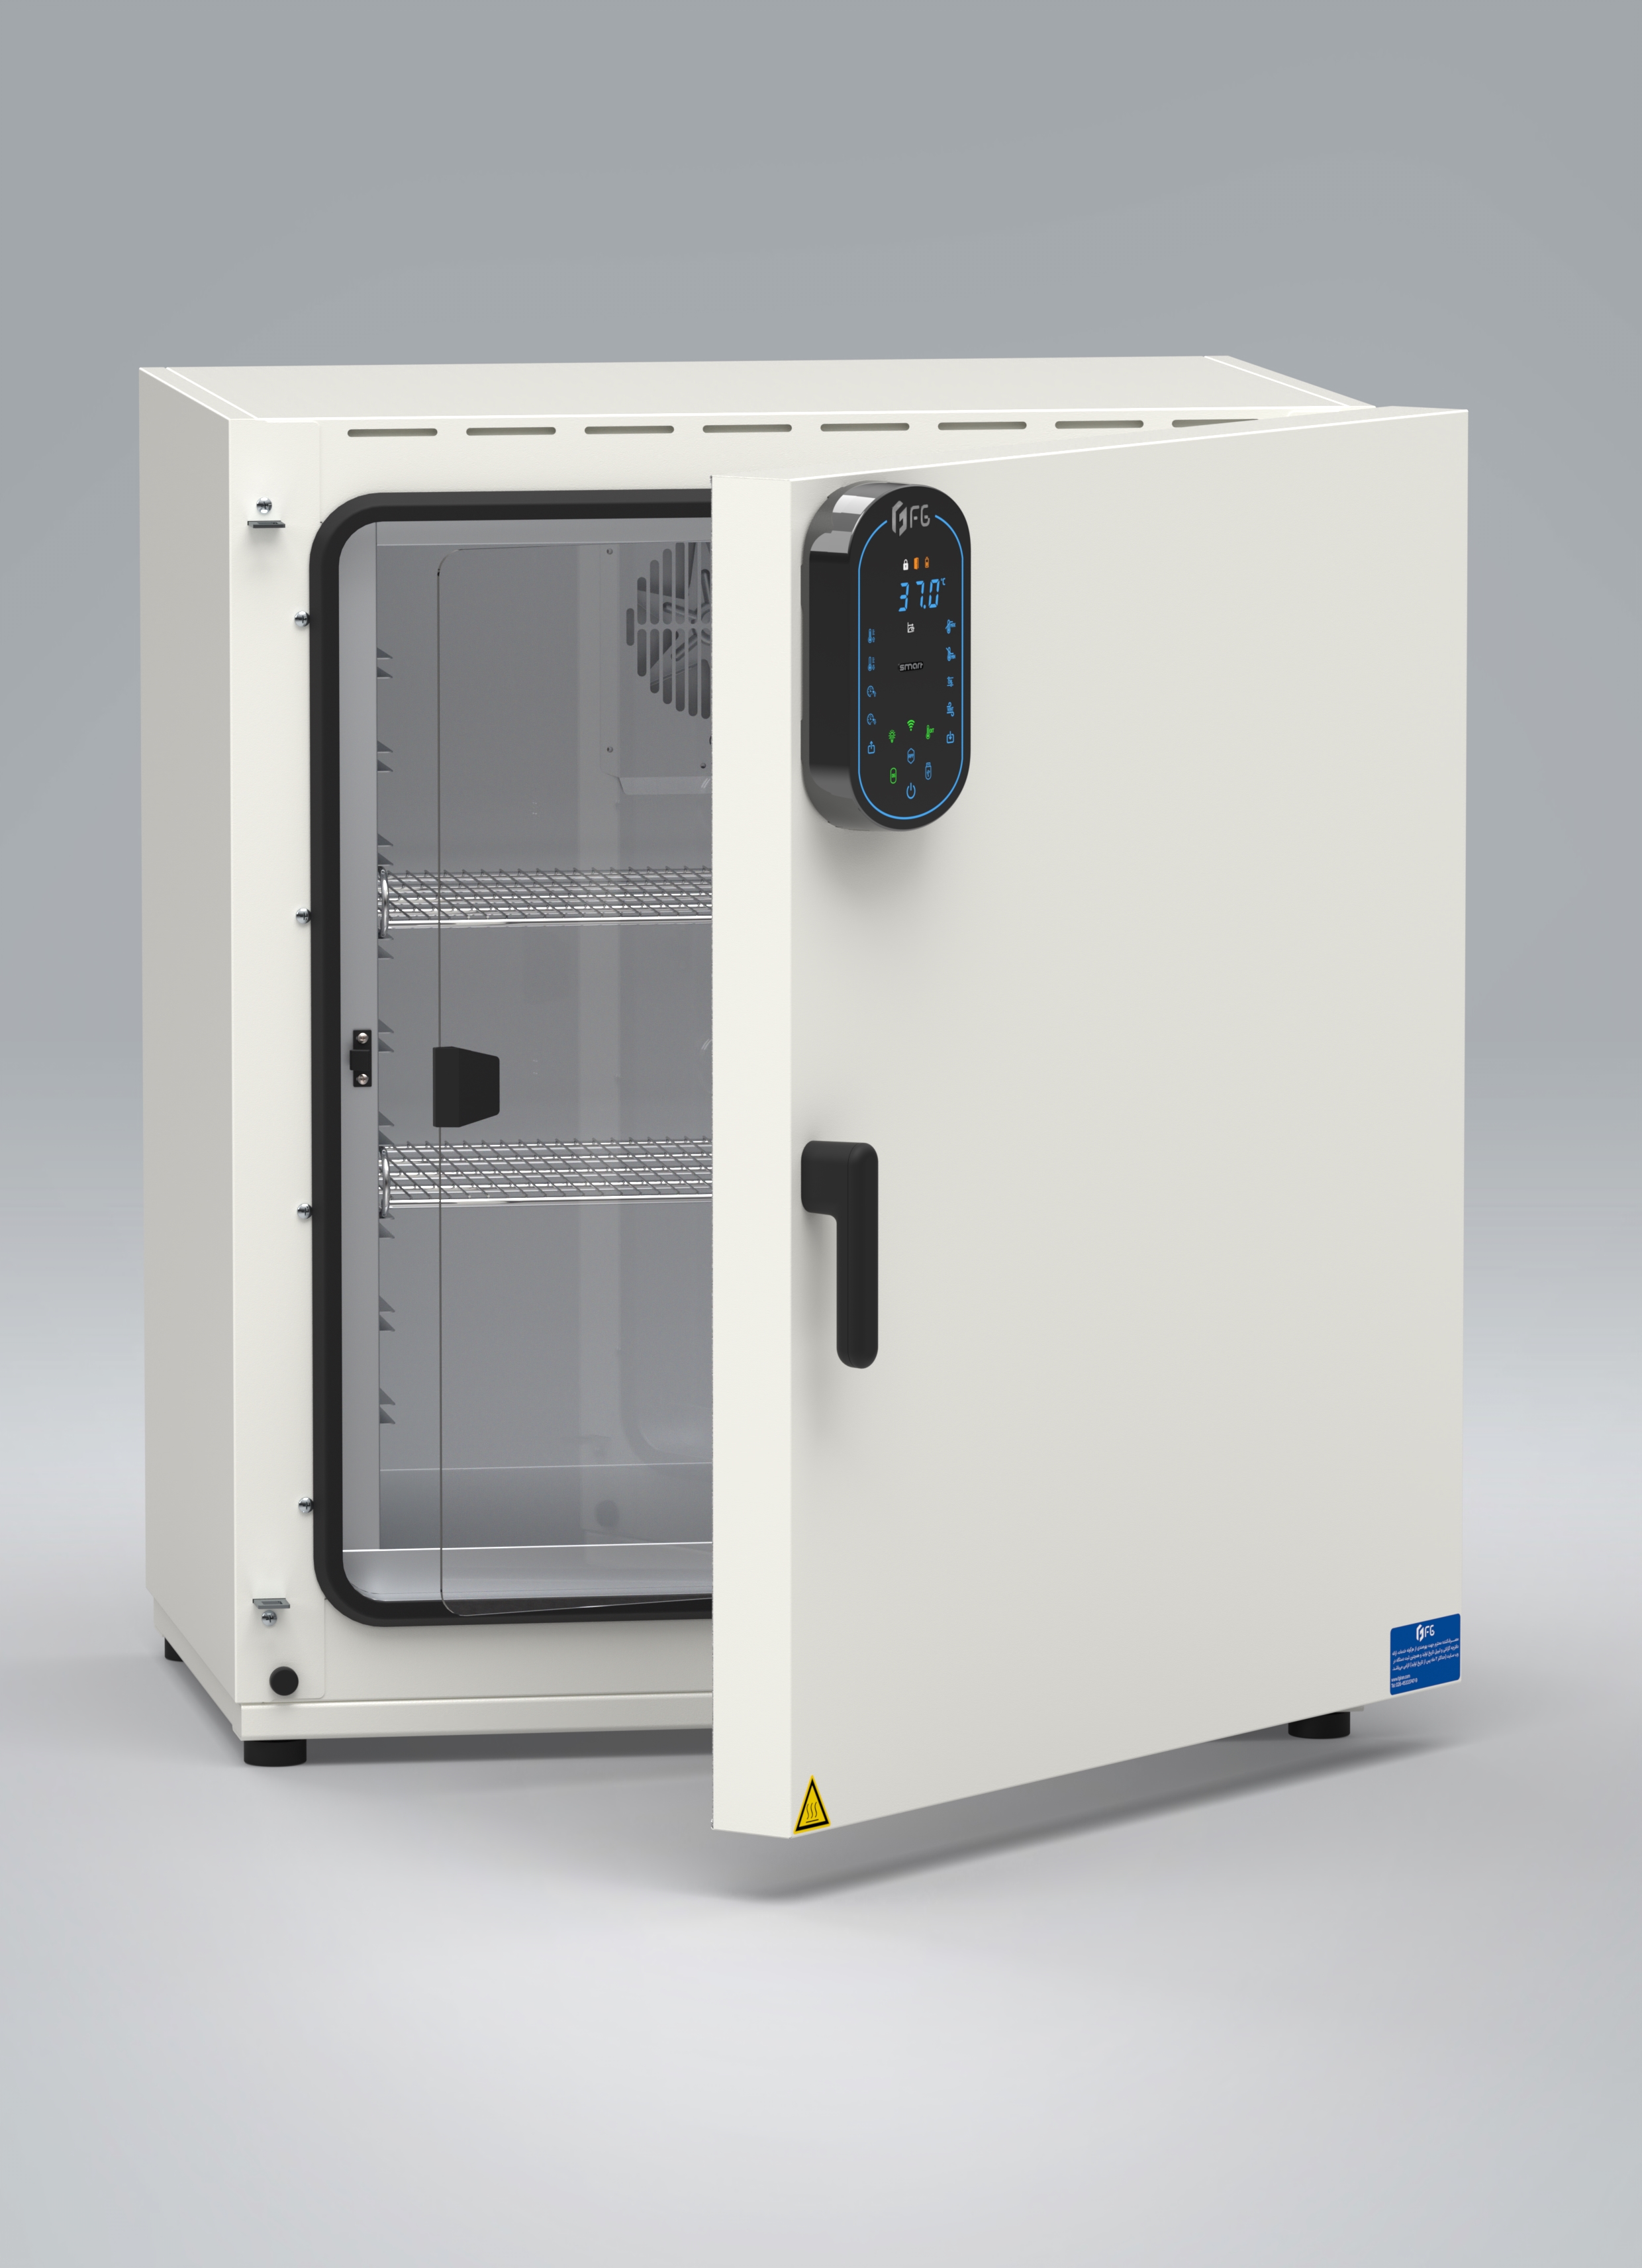 انکوباتور هوشمند حرارتی آزمایشگاهی - Smart Hot Inubator - FG - دستگاه - دستگاه ها و ملزومات آزمایشگاهی - فن آزما گستر